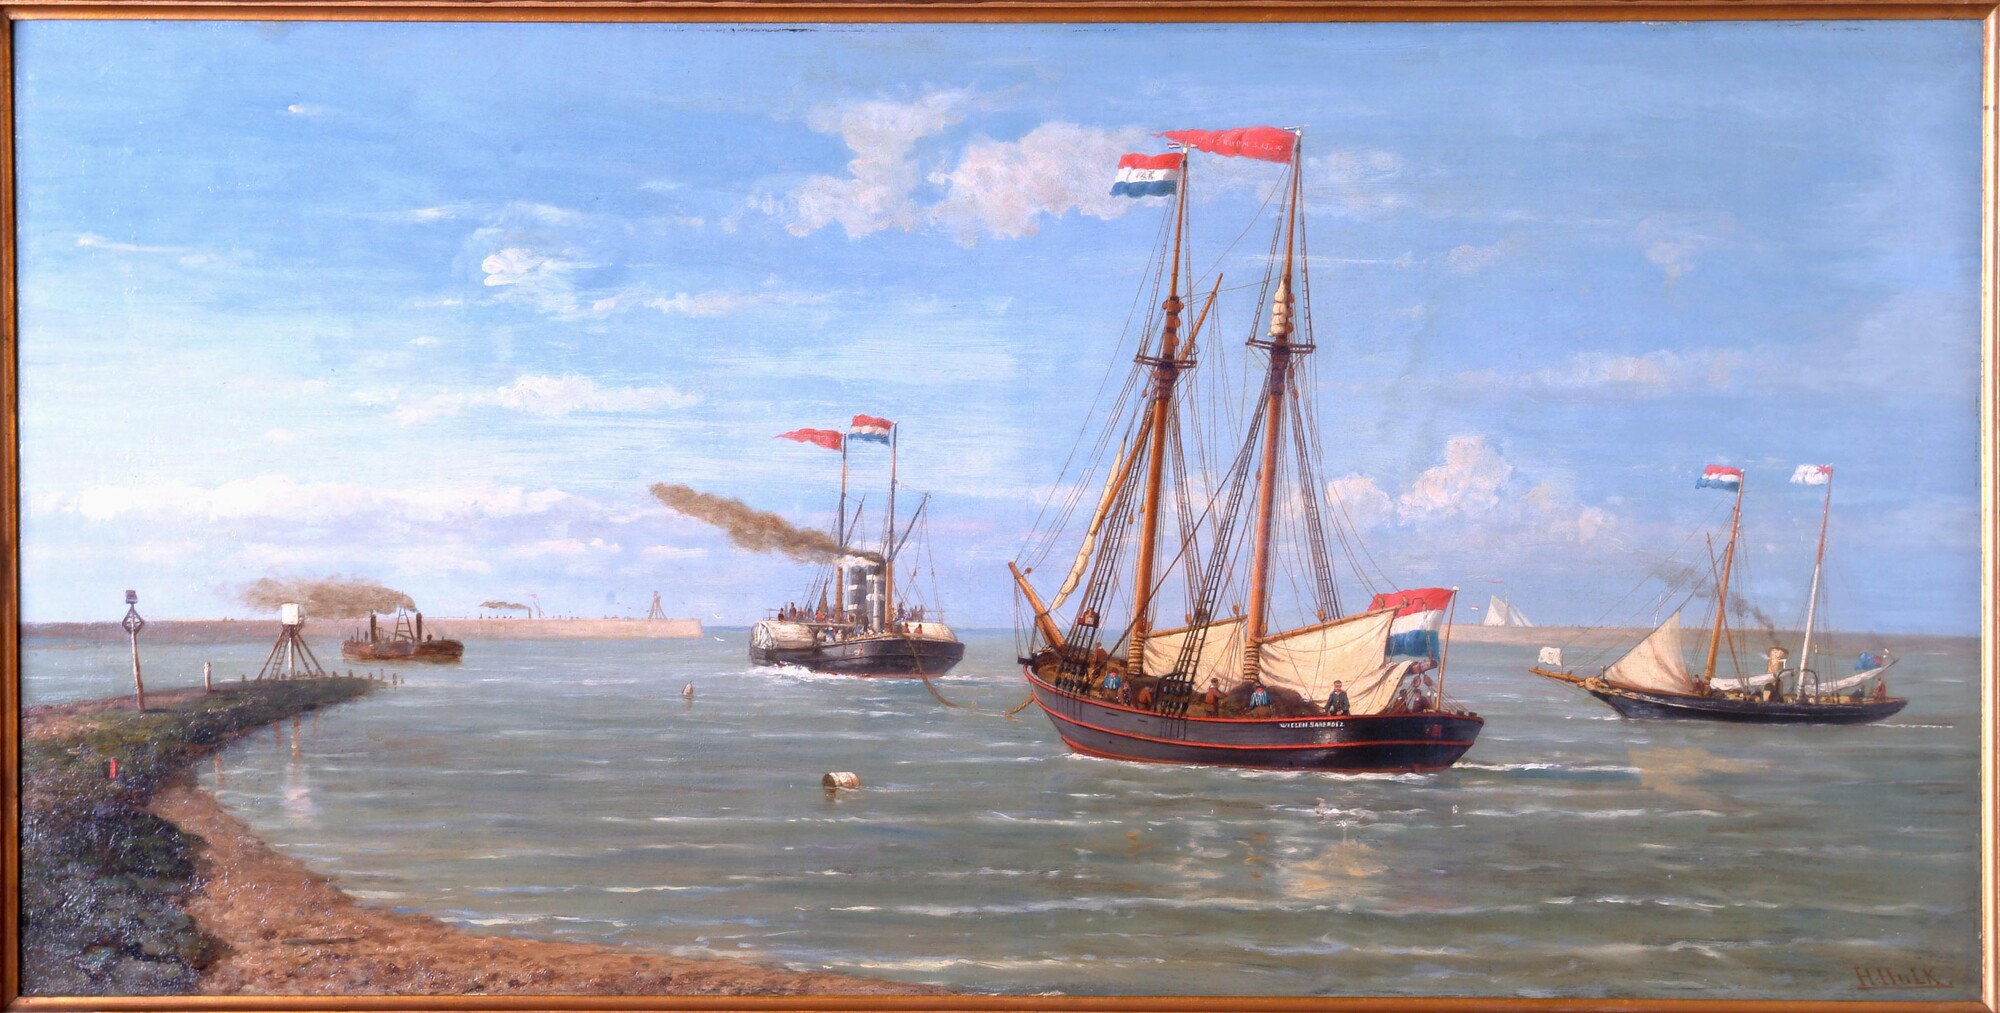 A.5573; De poolschoener Willem Barents wordt de haven van IJmuiden uitgesleept; schilderij